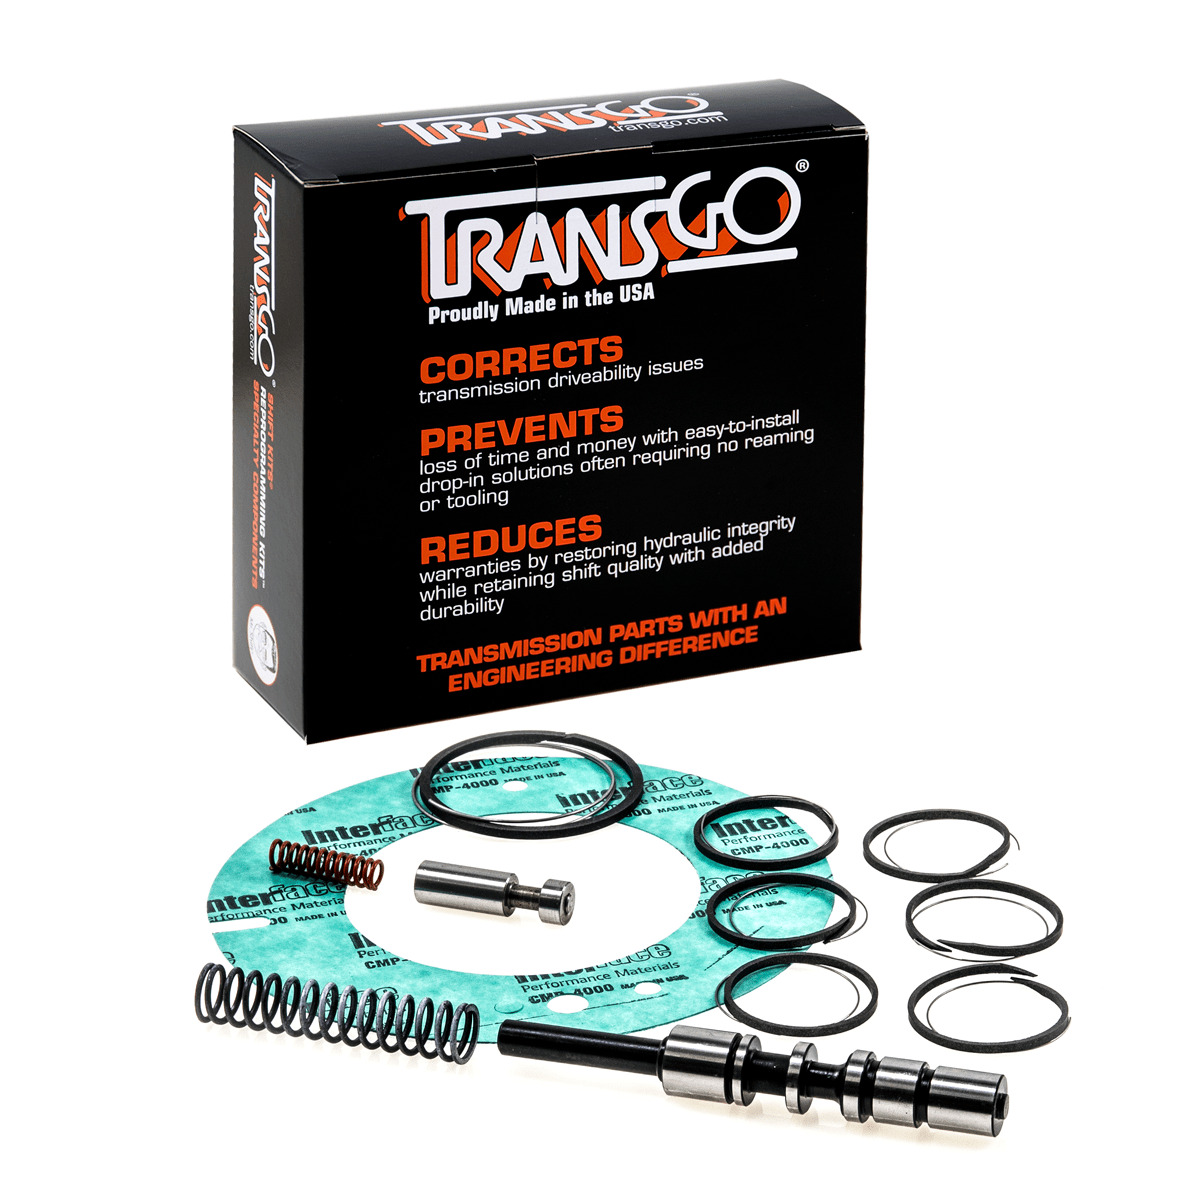 Transgo Shift Kit Valve Body Repair Kit Fits 62TE 2007-on (SK62TE)*